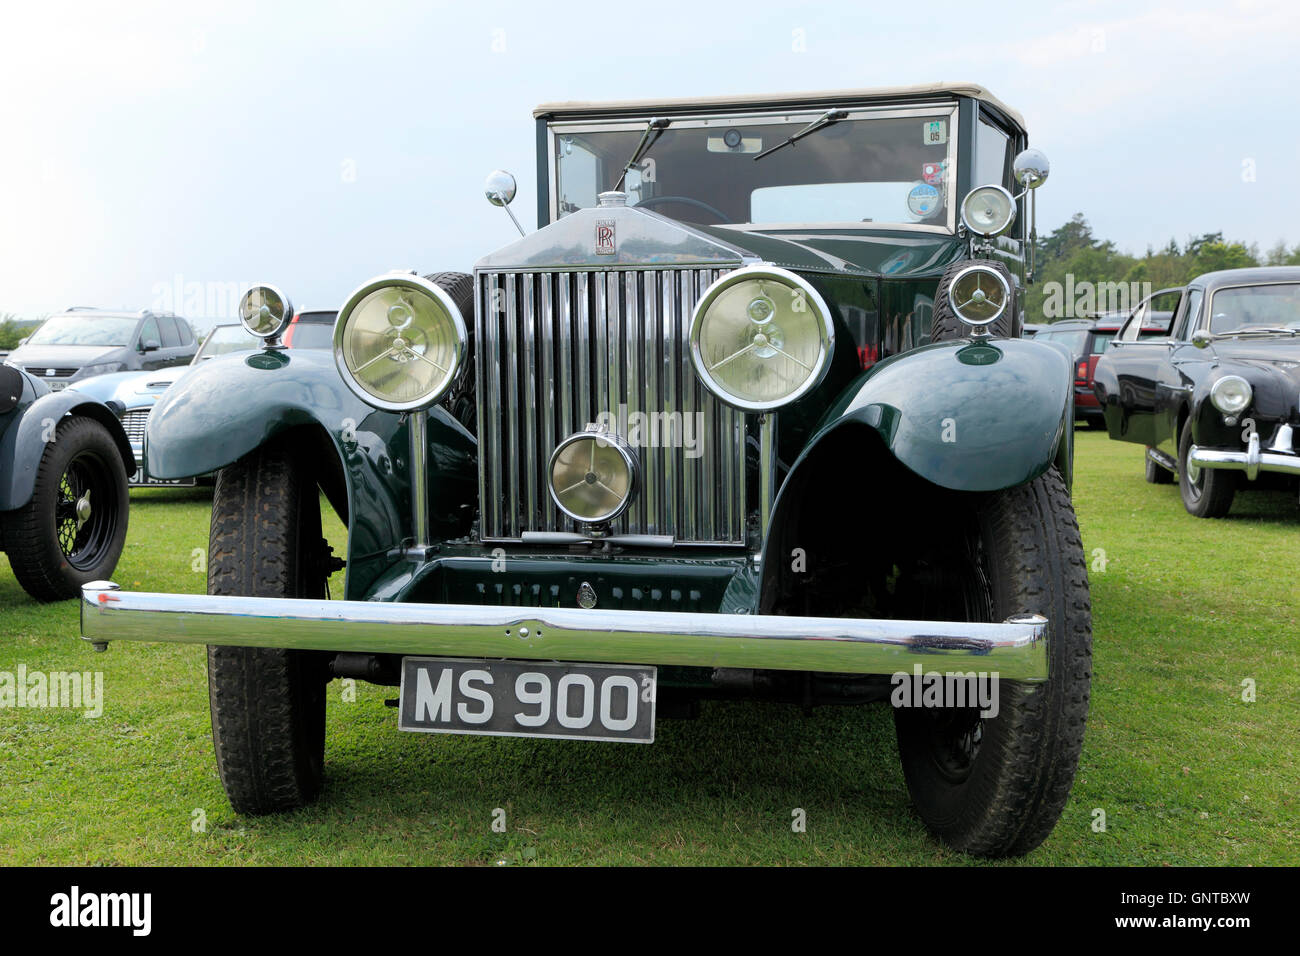 Rolls Royce, vintage classic British English Véhicule automobile des véhicules automobiles automobile voitures Banque D'Images